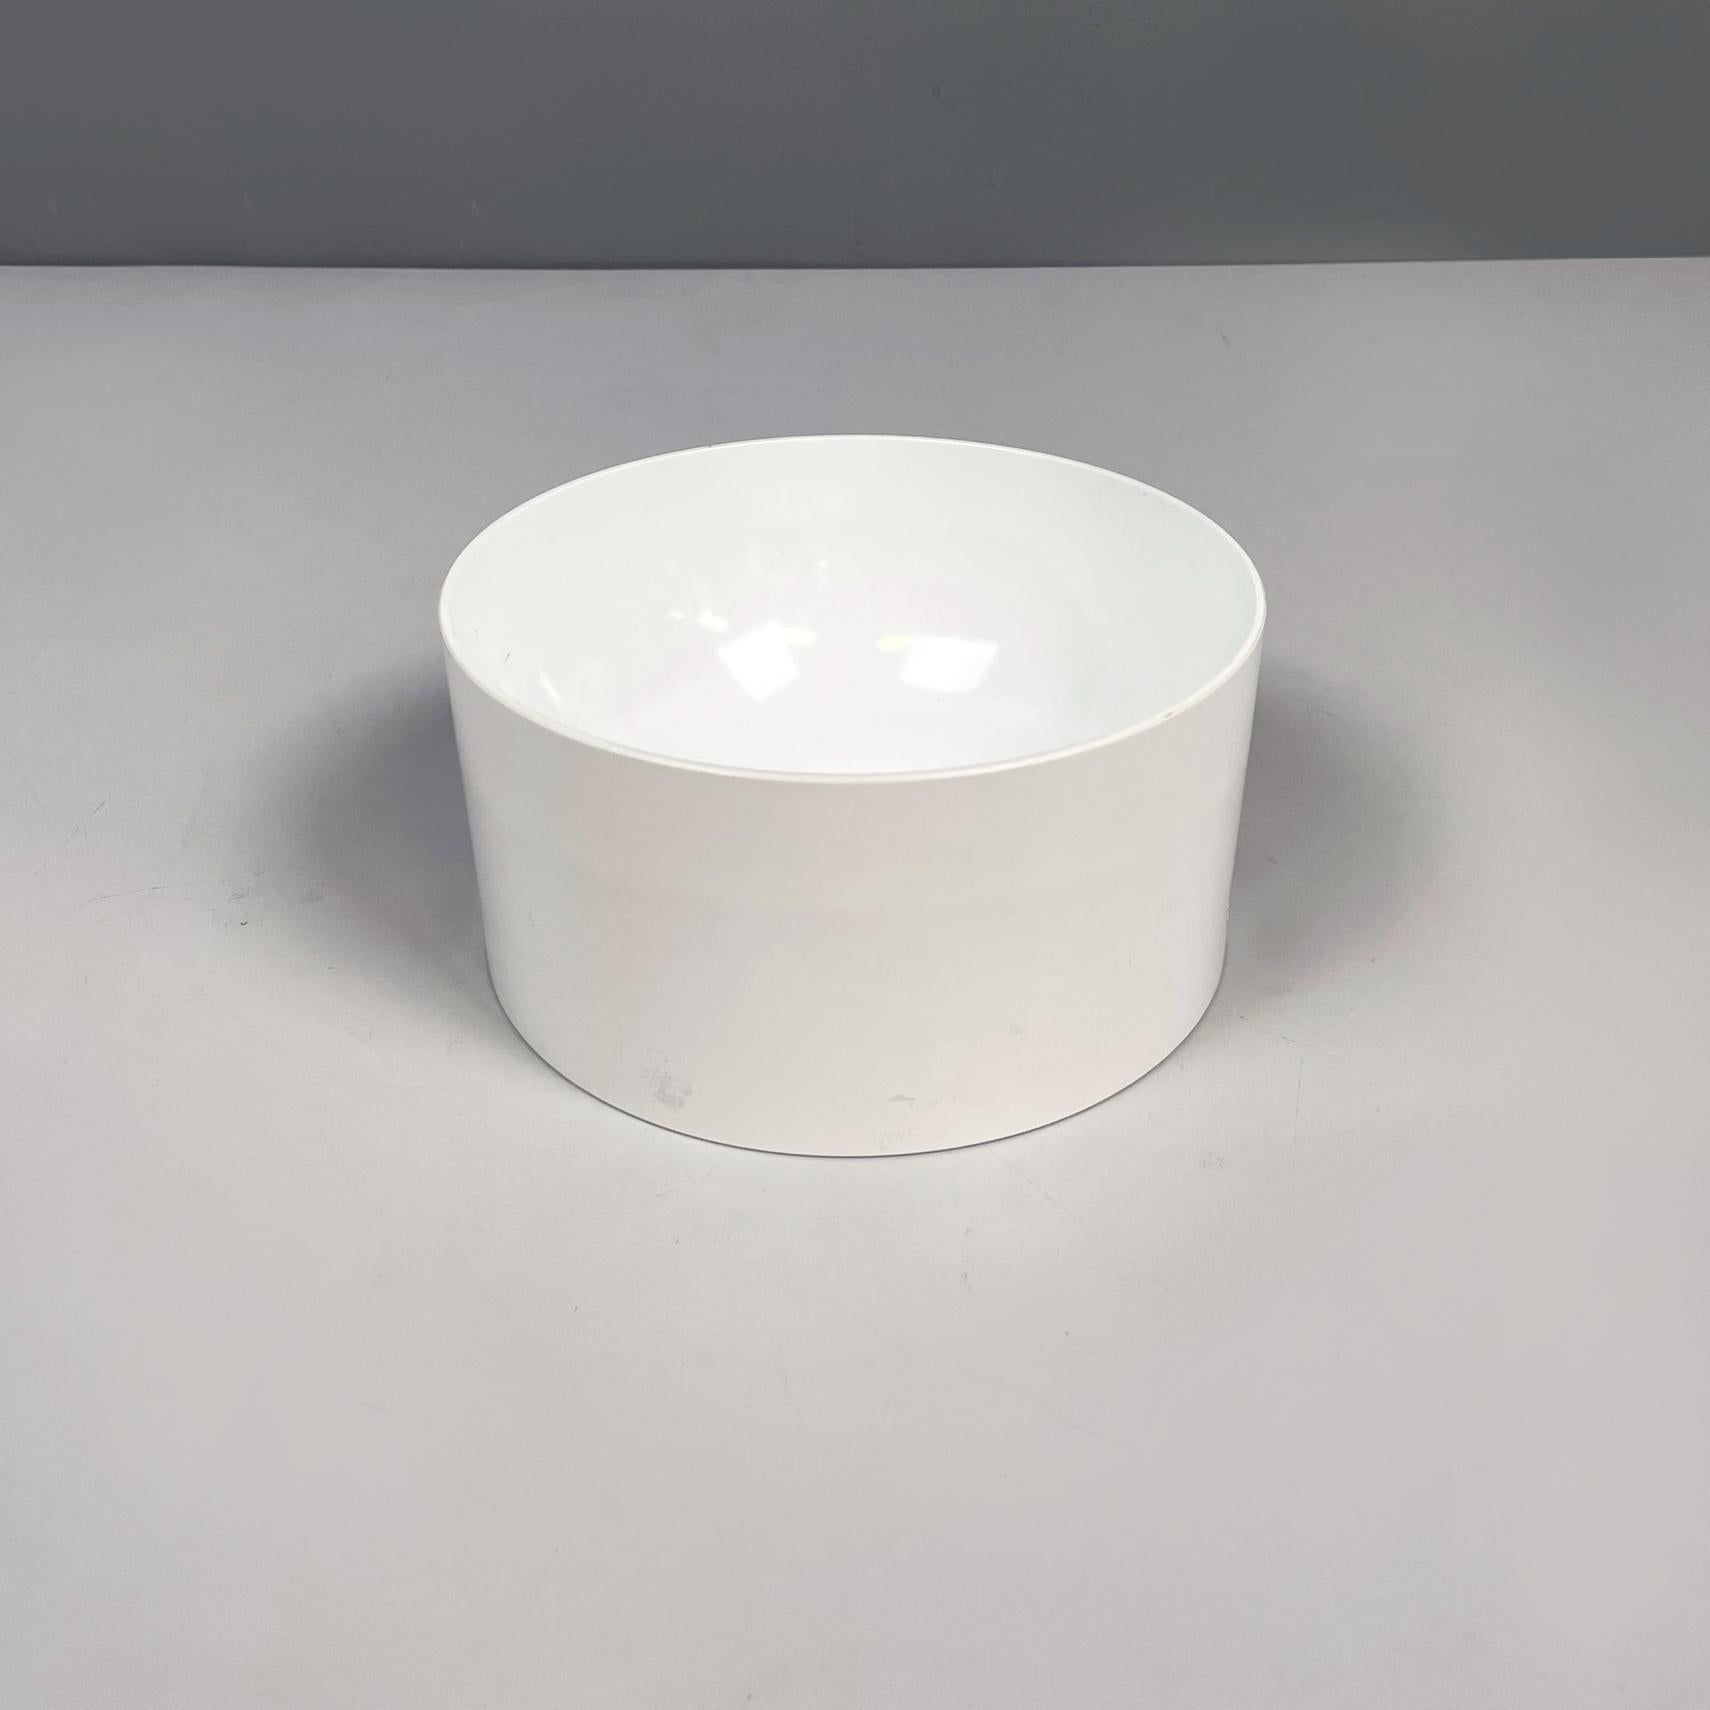 Italienische Moderne Space Age Zylindrische Schale aus weißem Kunststoff von Enzo Mari für Danese, 1970er Jahre
Zylindrische Schale aus weißem Glasfasergewebe. An den beiden Seiten hat es ein Paar runde Löcher. Er kann als Mittelstück, Obstschale